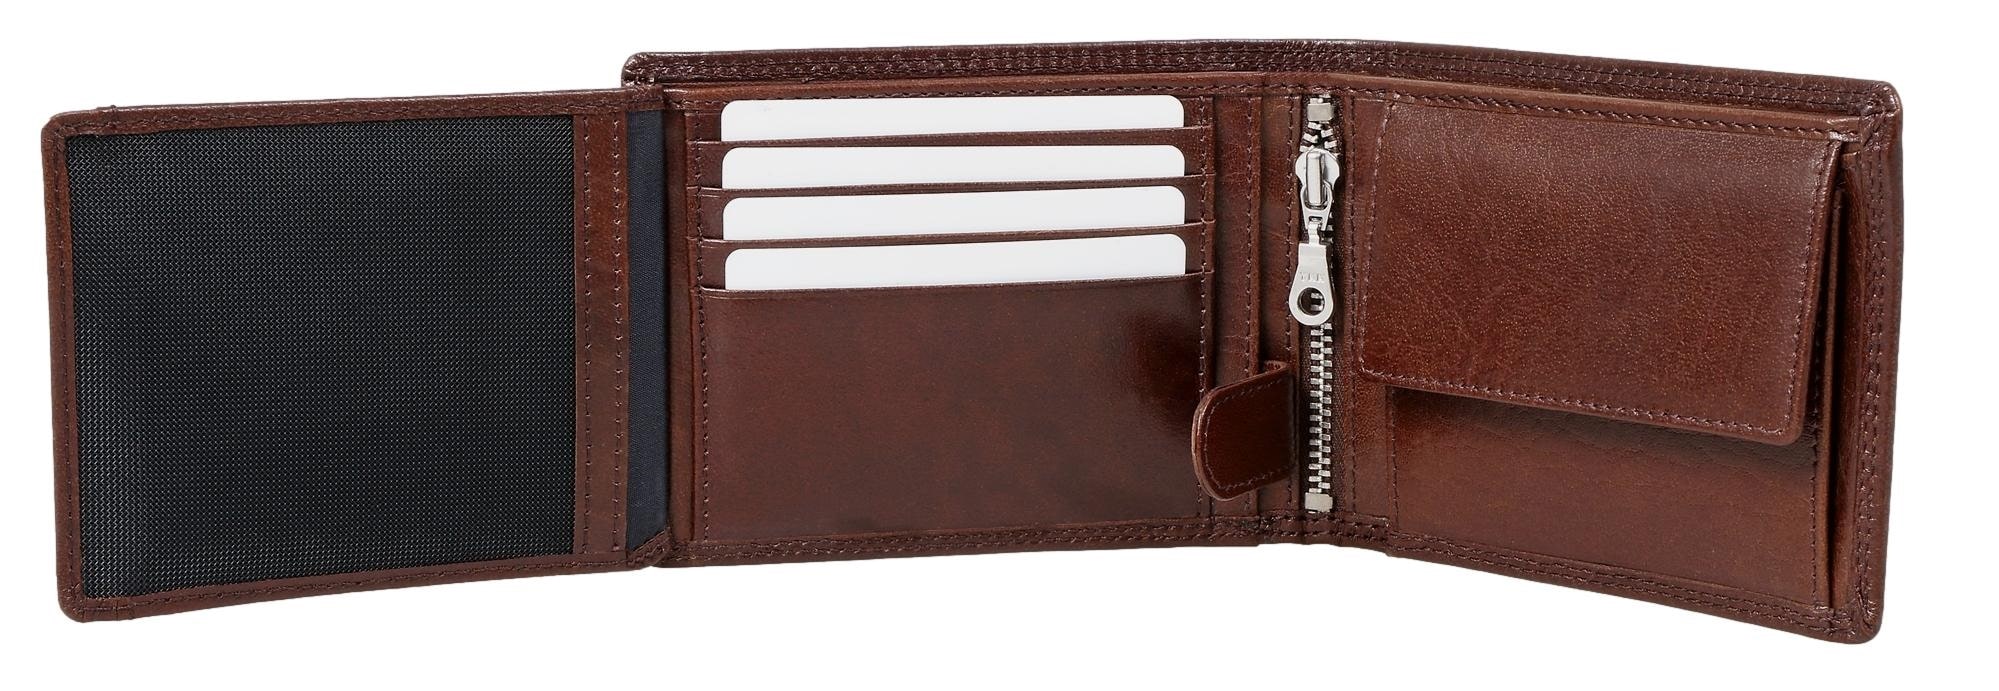 Brown Bear Classic 8005 - Herren-Geldbörse mit Reißverschlussfach